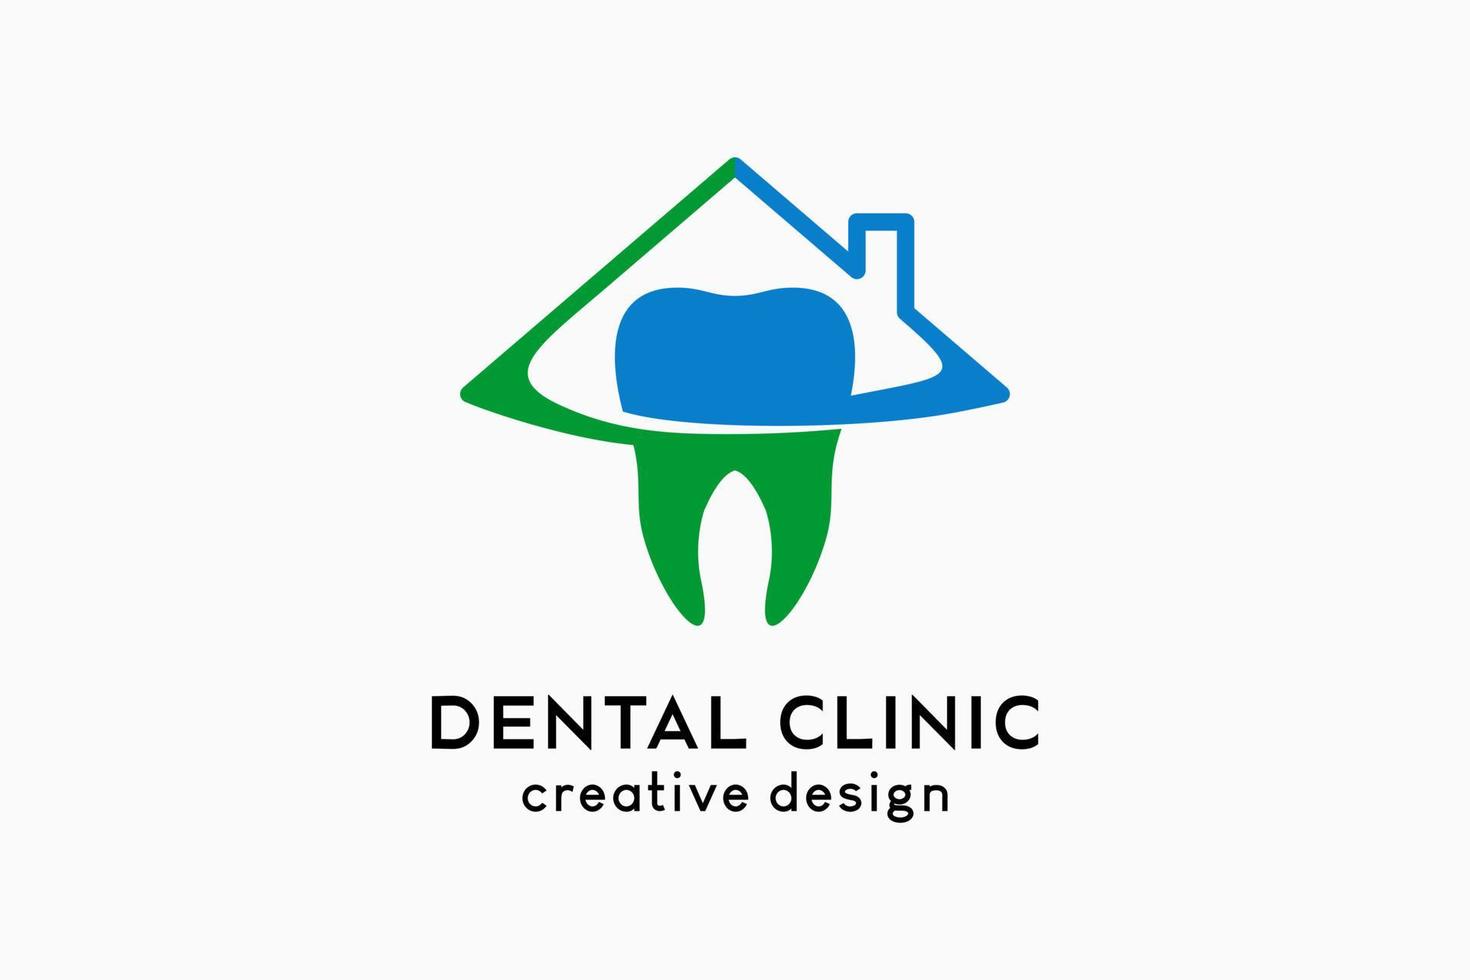 création de logo de clinique dentaire avec concept créatif, icône dentaire combinée à l'icône de la maison vecteur